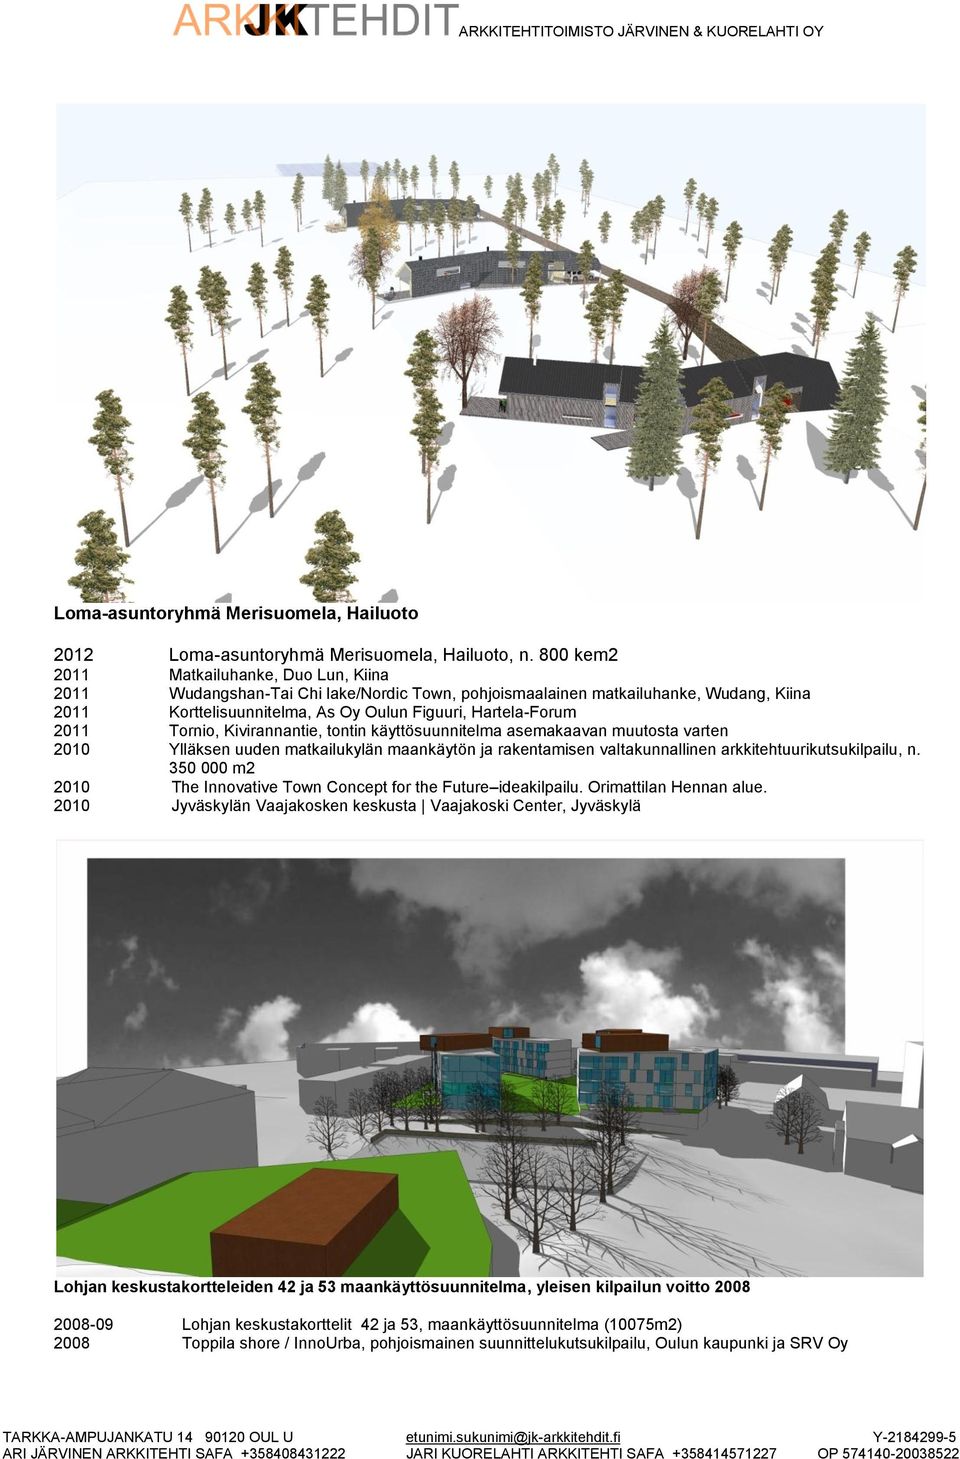 Tornio, Kivirannantie, tontin käyttösuunnitelma asemakaavan muutosta varten 2010 Ylläksen uuden matkailukylän maankäytön ja rakentamisen valtakunnallinen arkkitehtuurikutsukilpailu, n.